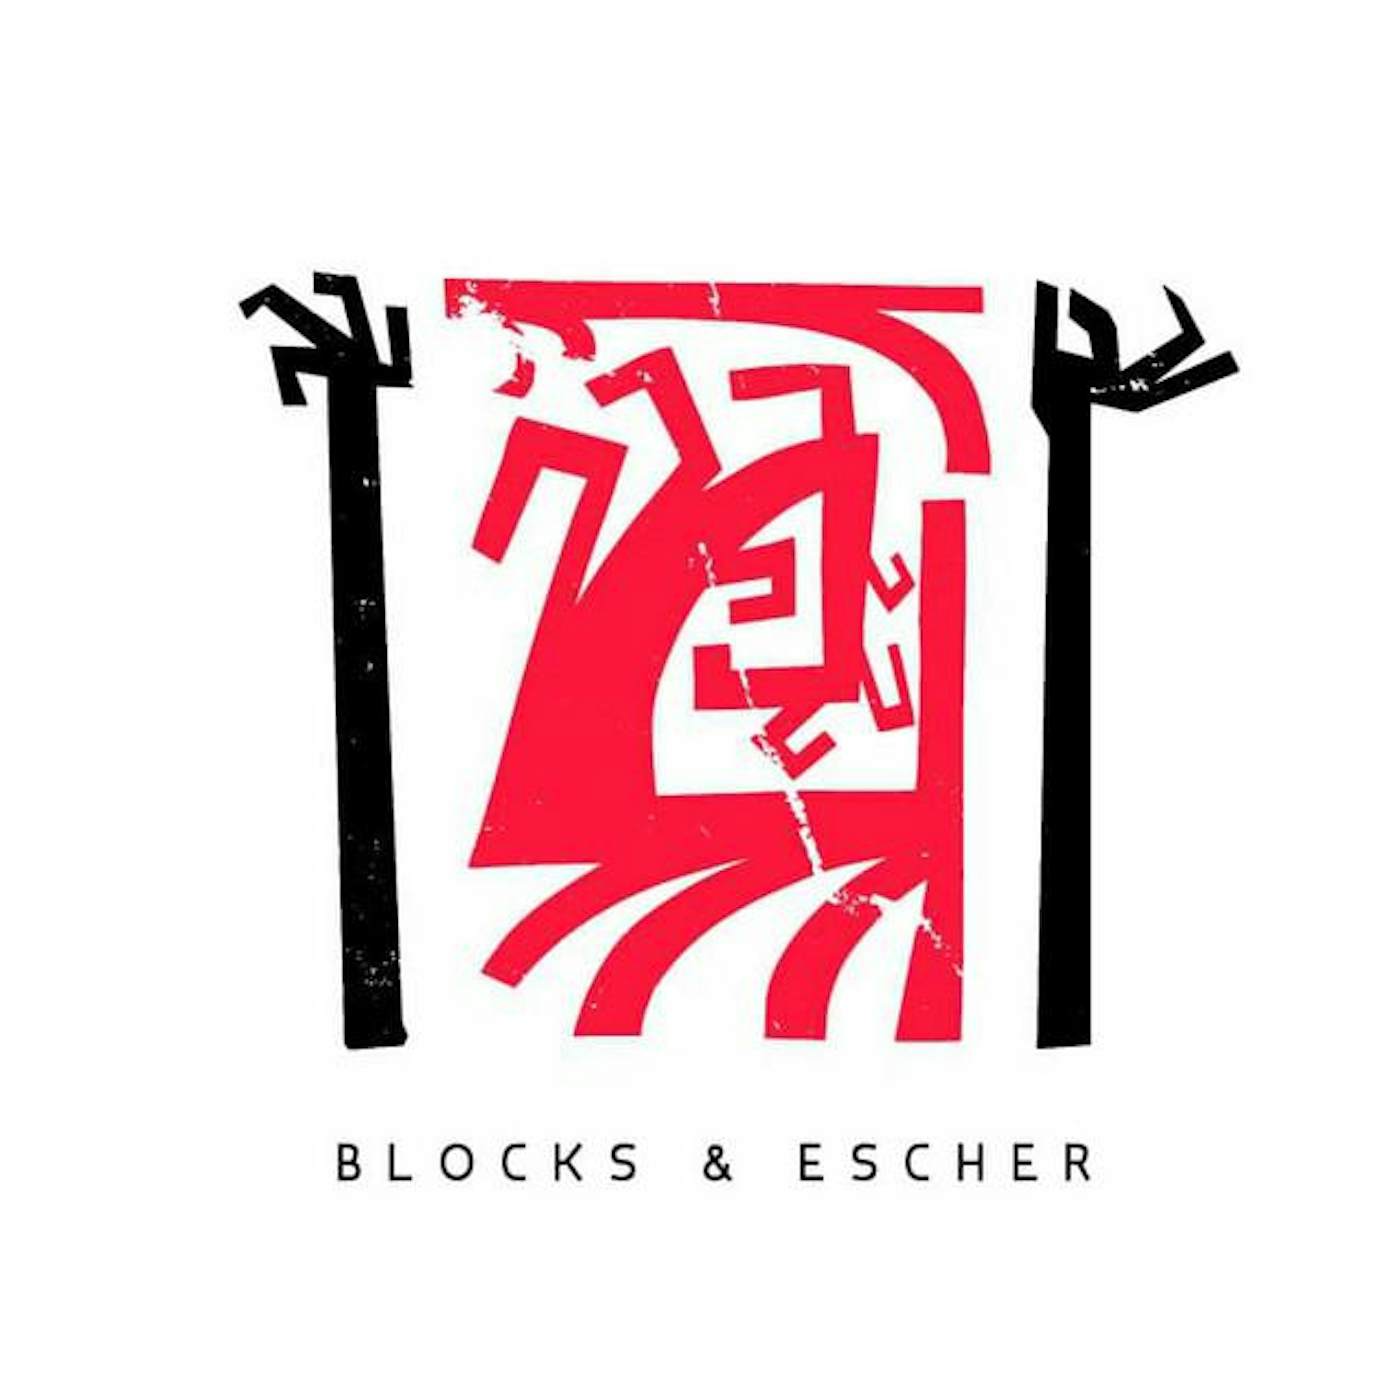 Blocks & Escher